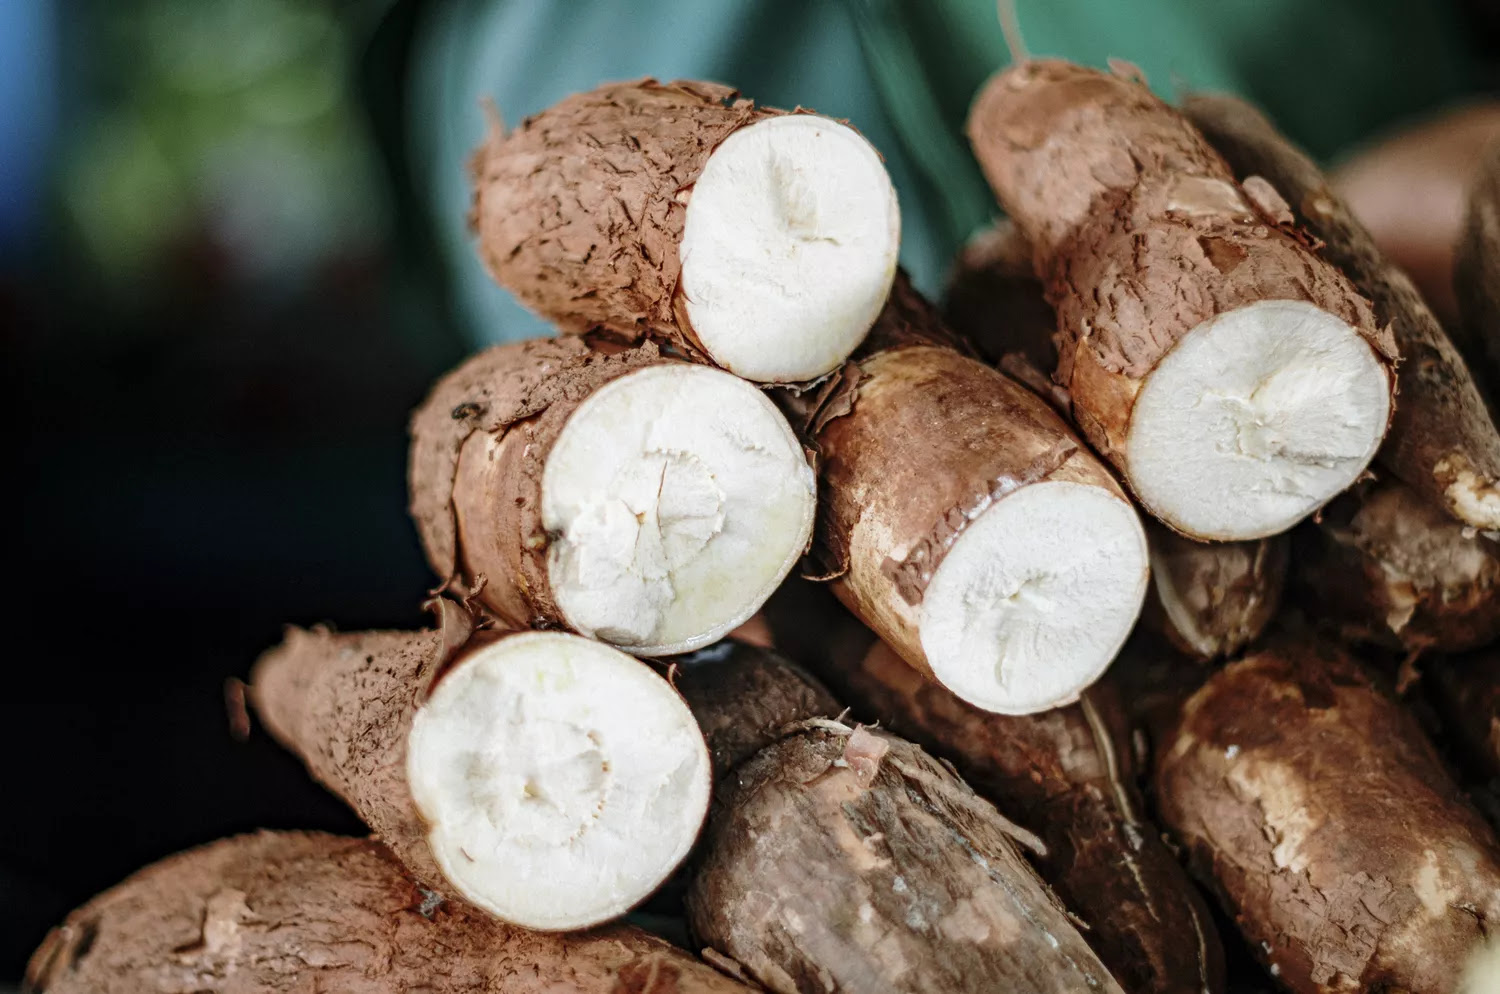 Cassava root vegetable: white inner flesh with a brown, bark-like exterior